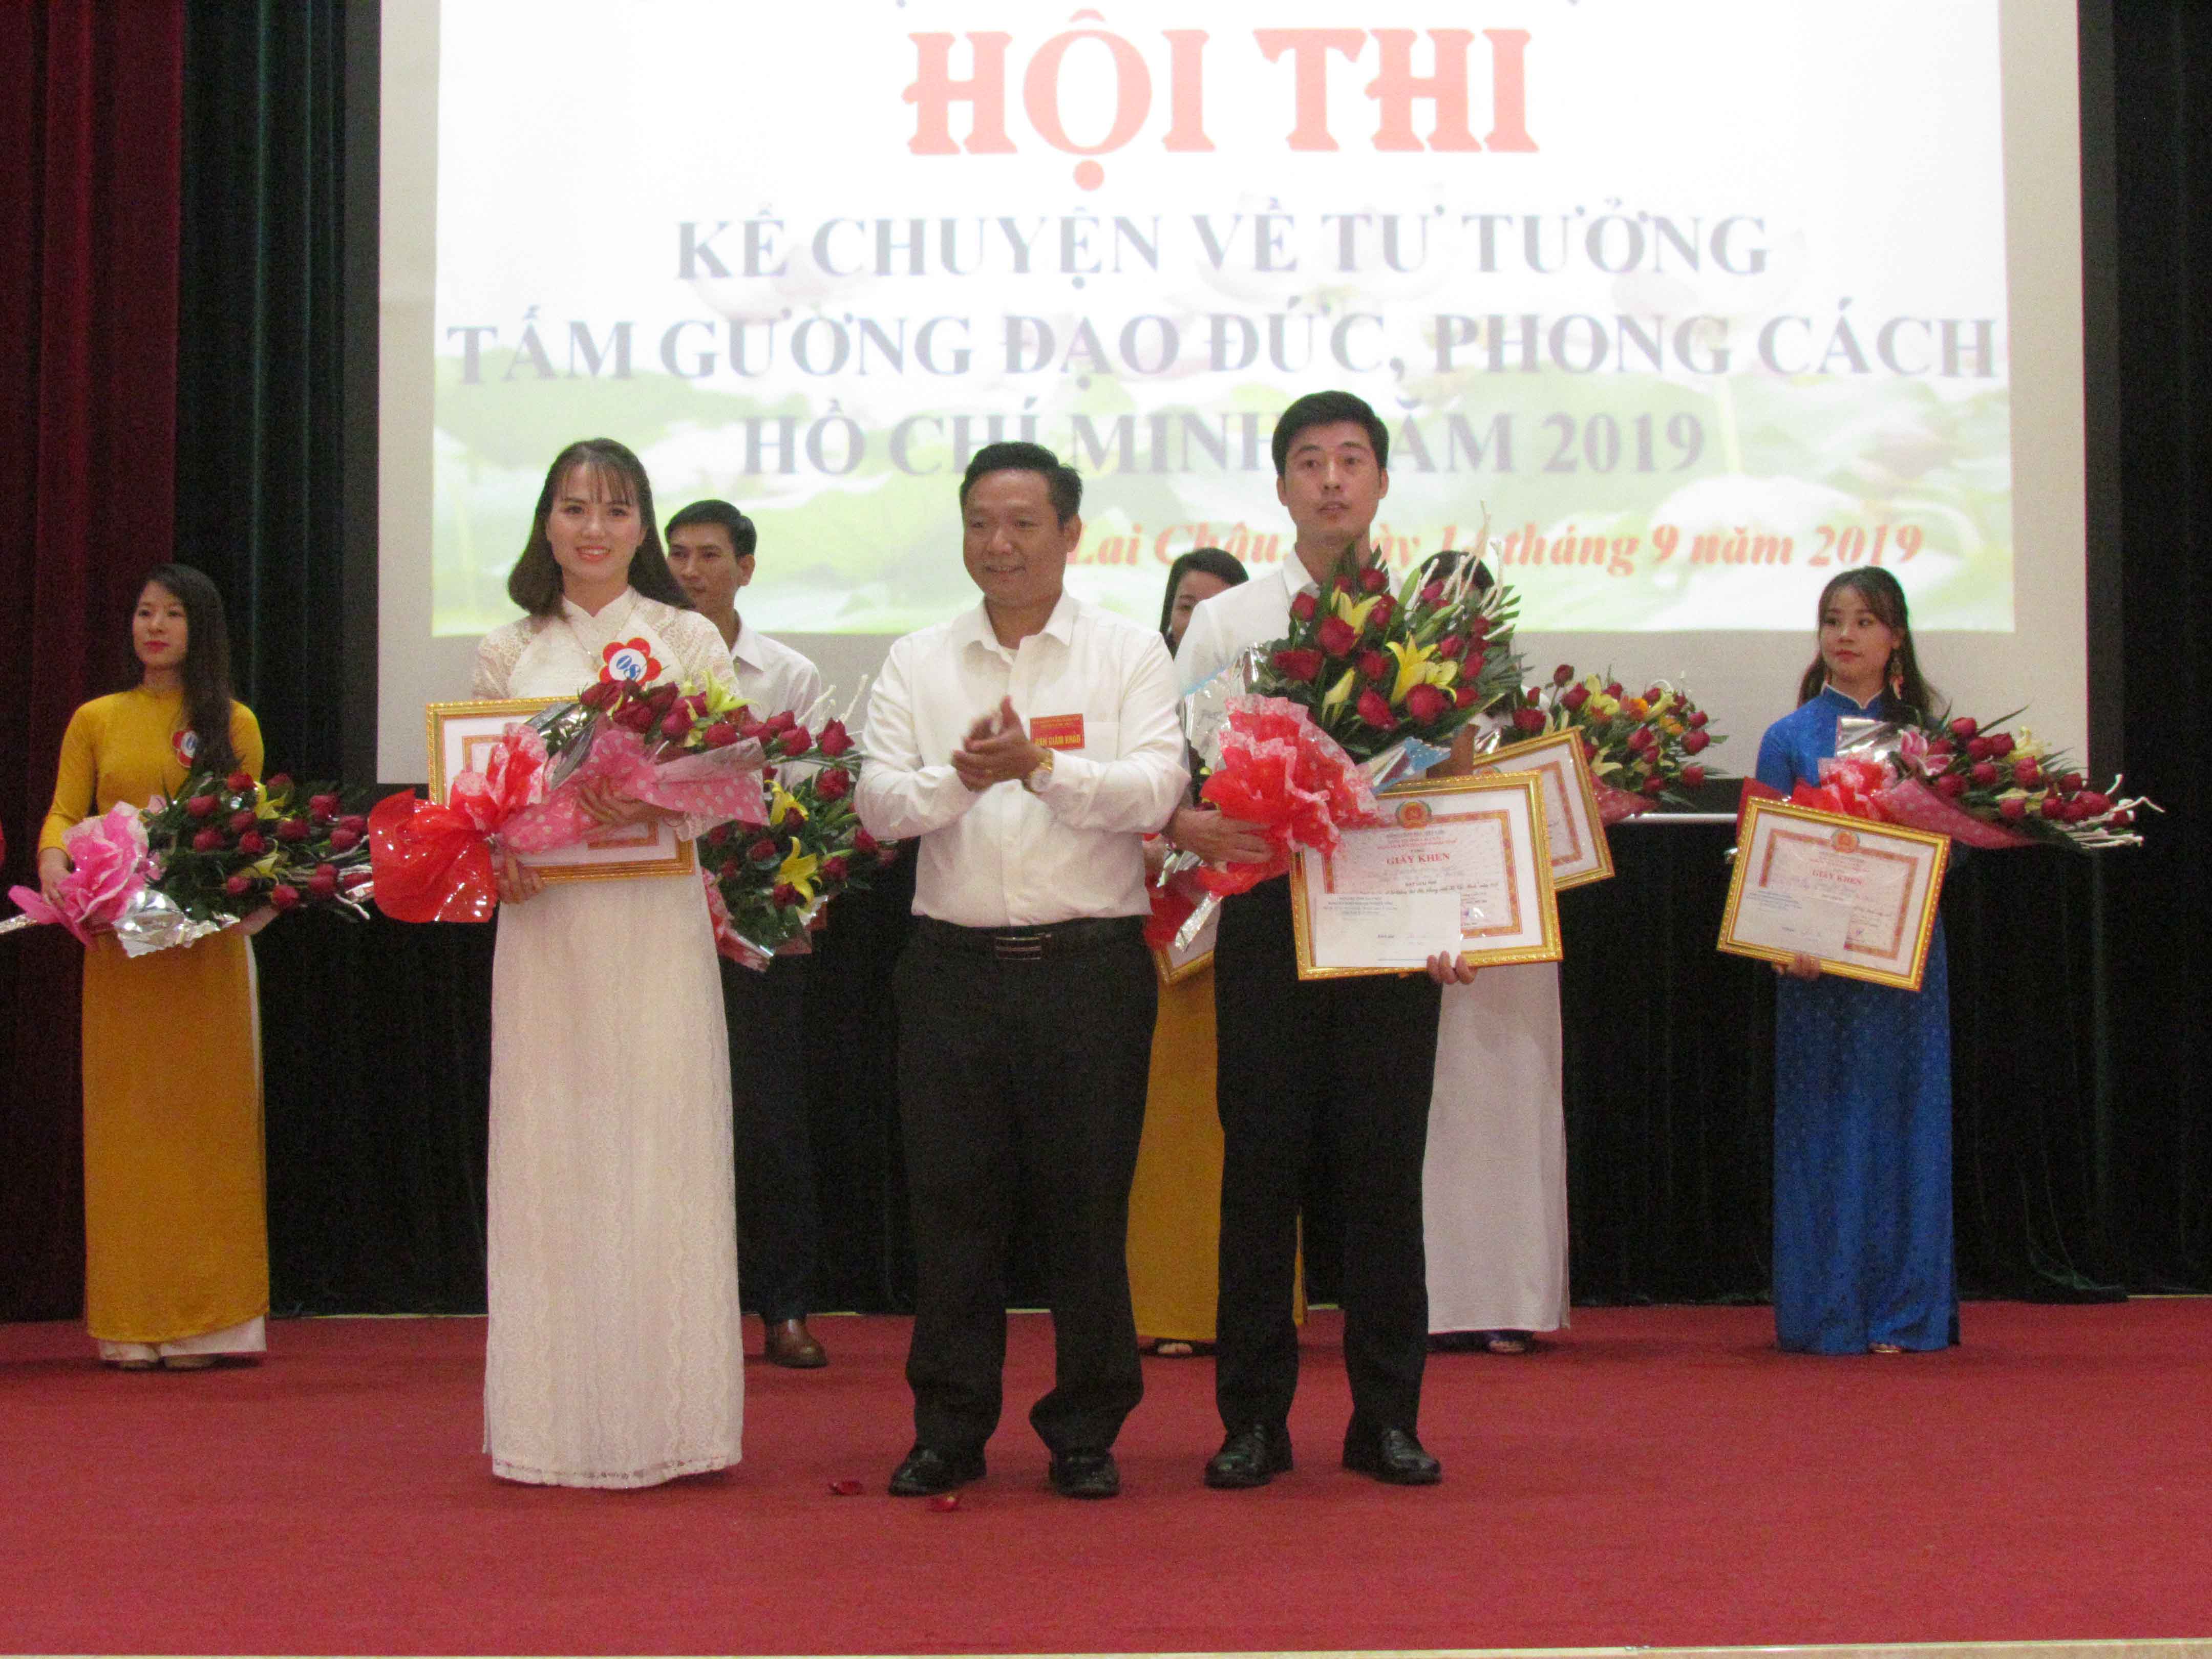 Đồng chí Lý Công Hà – Phó Bí thư Đảng ủy Khối Doanh nghiệp tỉnh trao giải nhì cho các thí sinh.